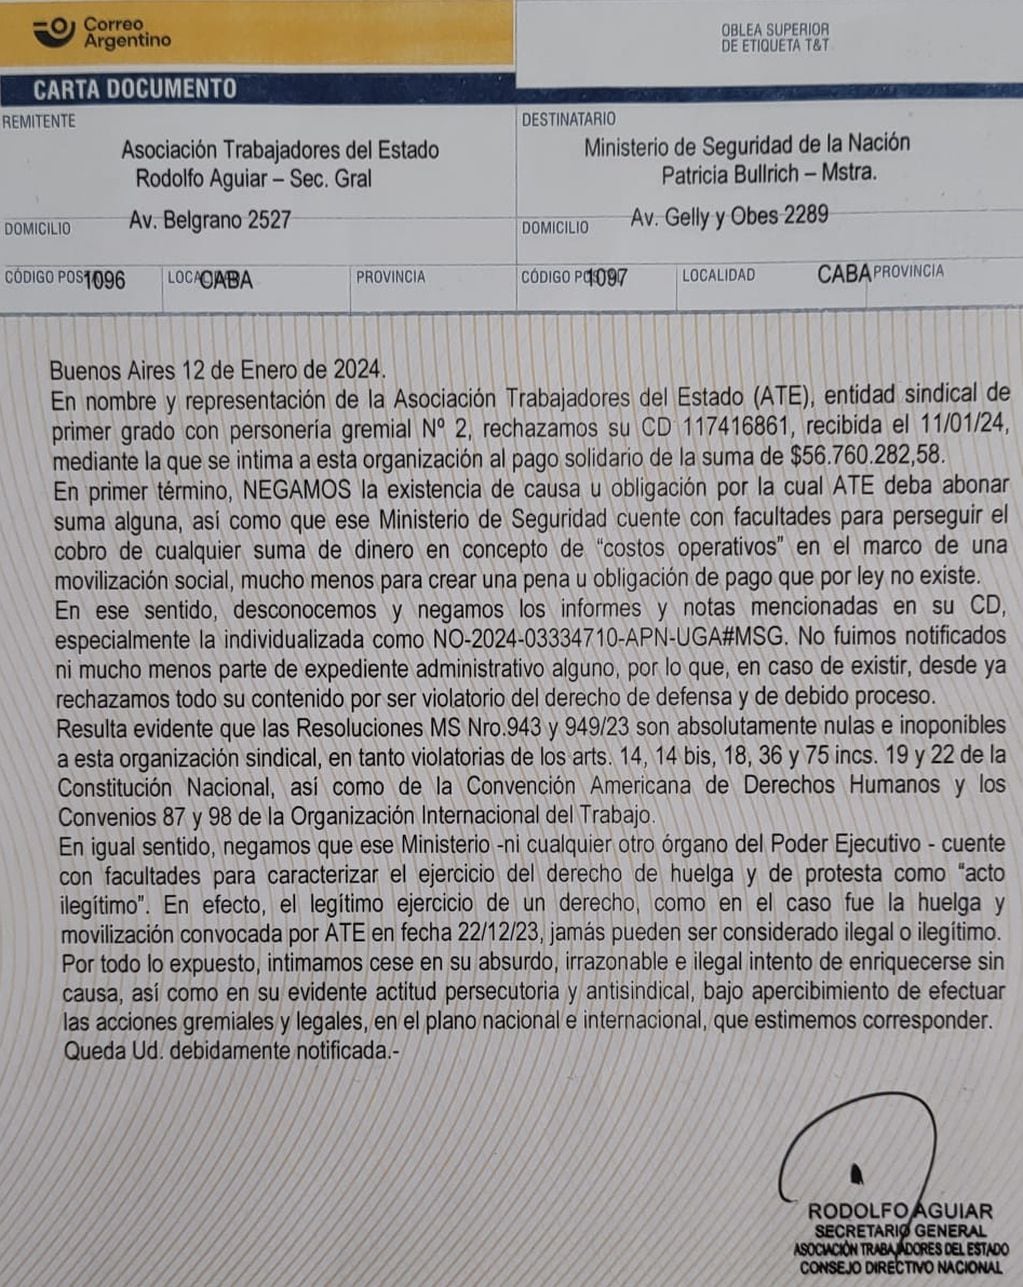 Carta documento de Rodolfo Aguiar -secretario general de ATE Nacional- al Ministerio de Seguridad, a cargo de Patricia Bullrich. Foto: Rodolfo Aguiar en X.